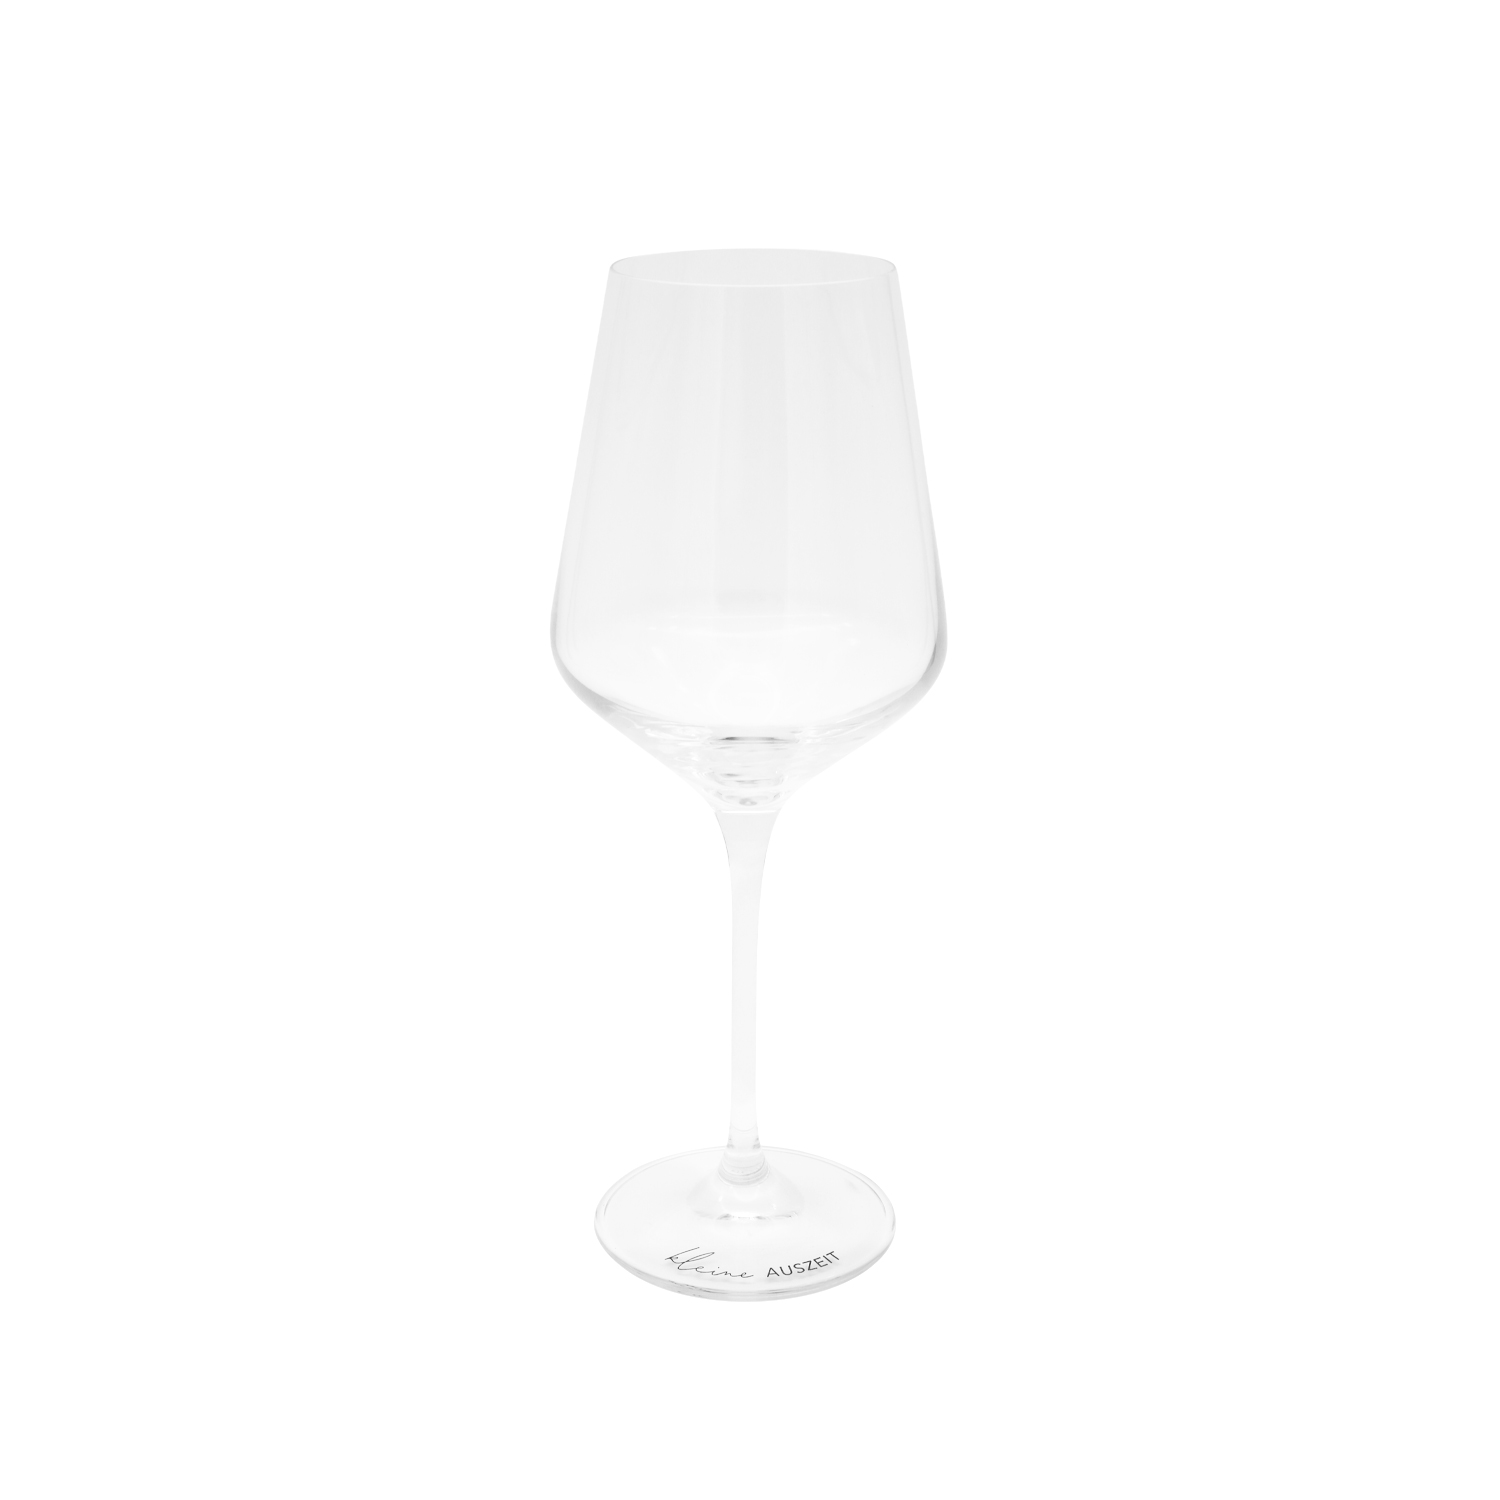 Weinglas “Kleine Auszeit“